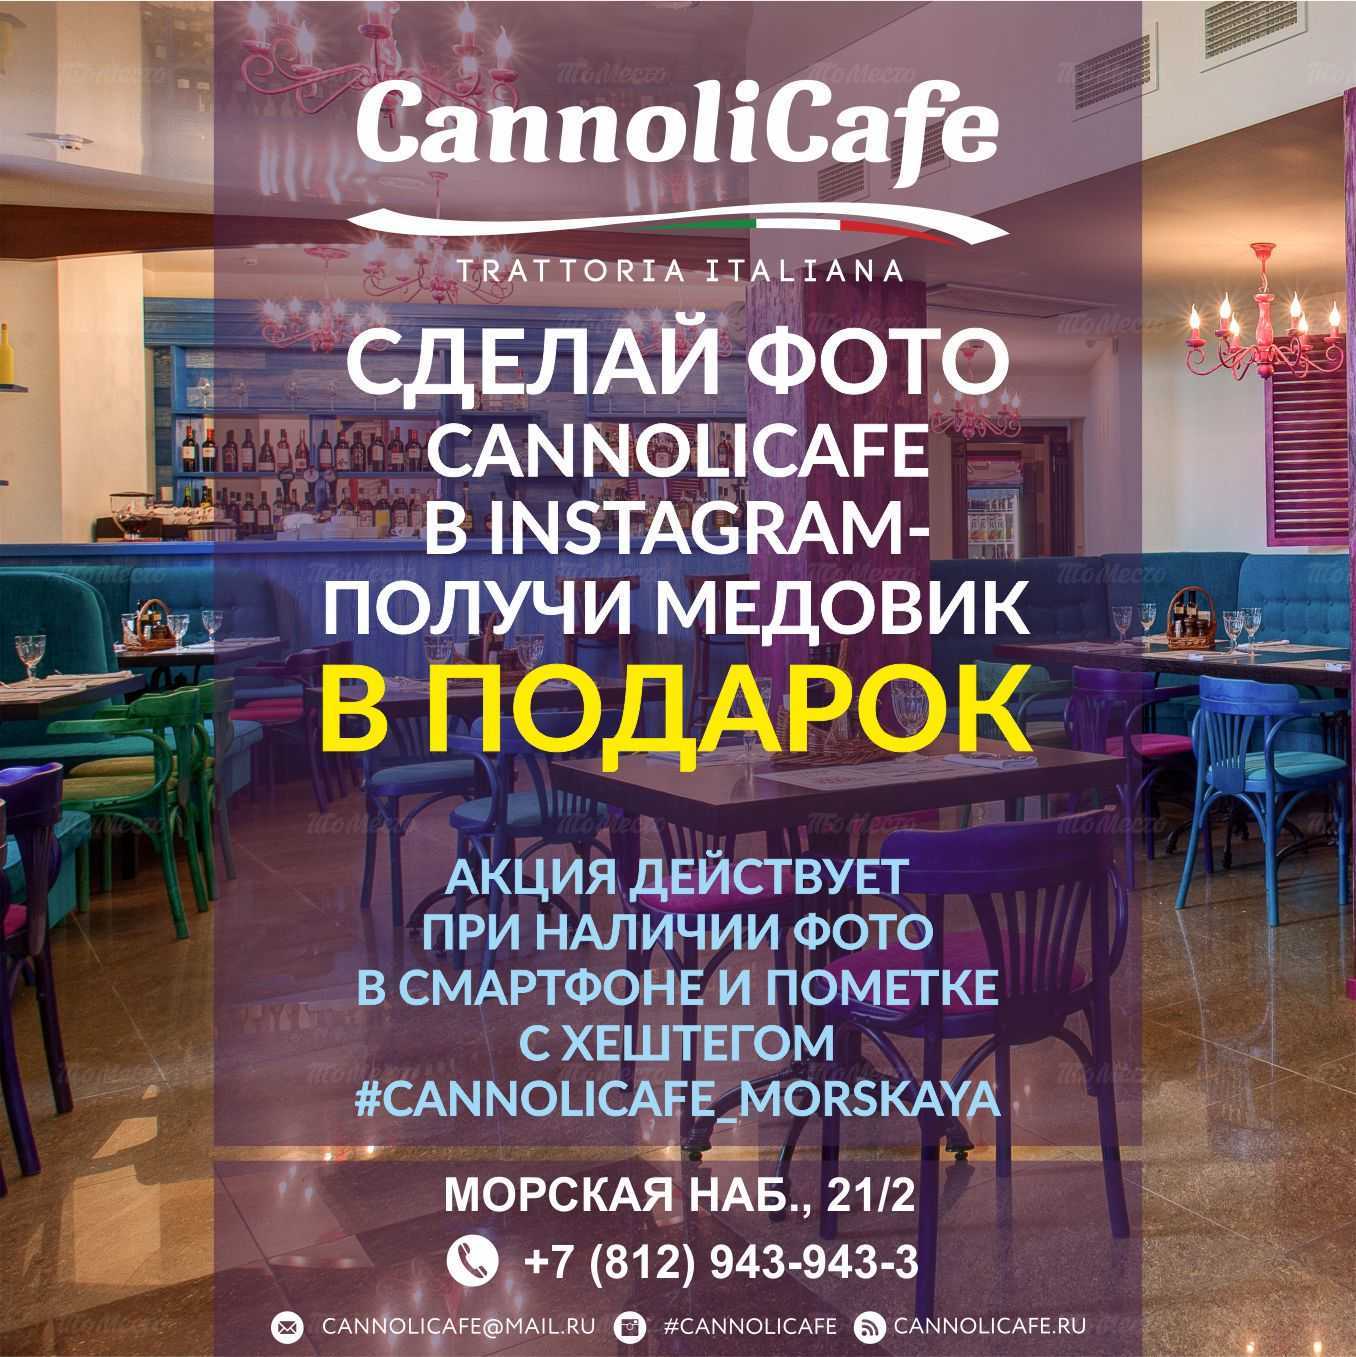 Сделай фото CannoliCafe в Instagram - получи медовик в подарок